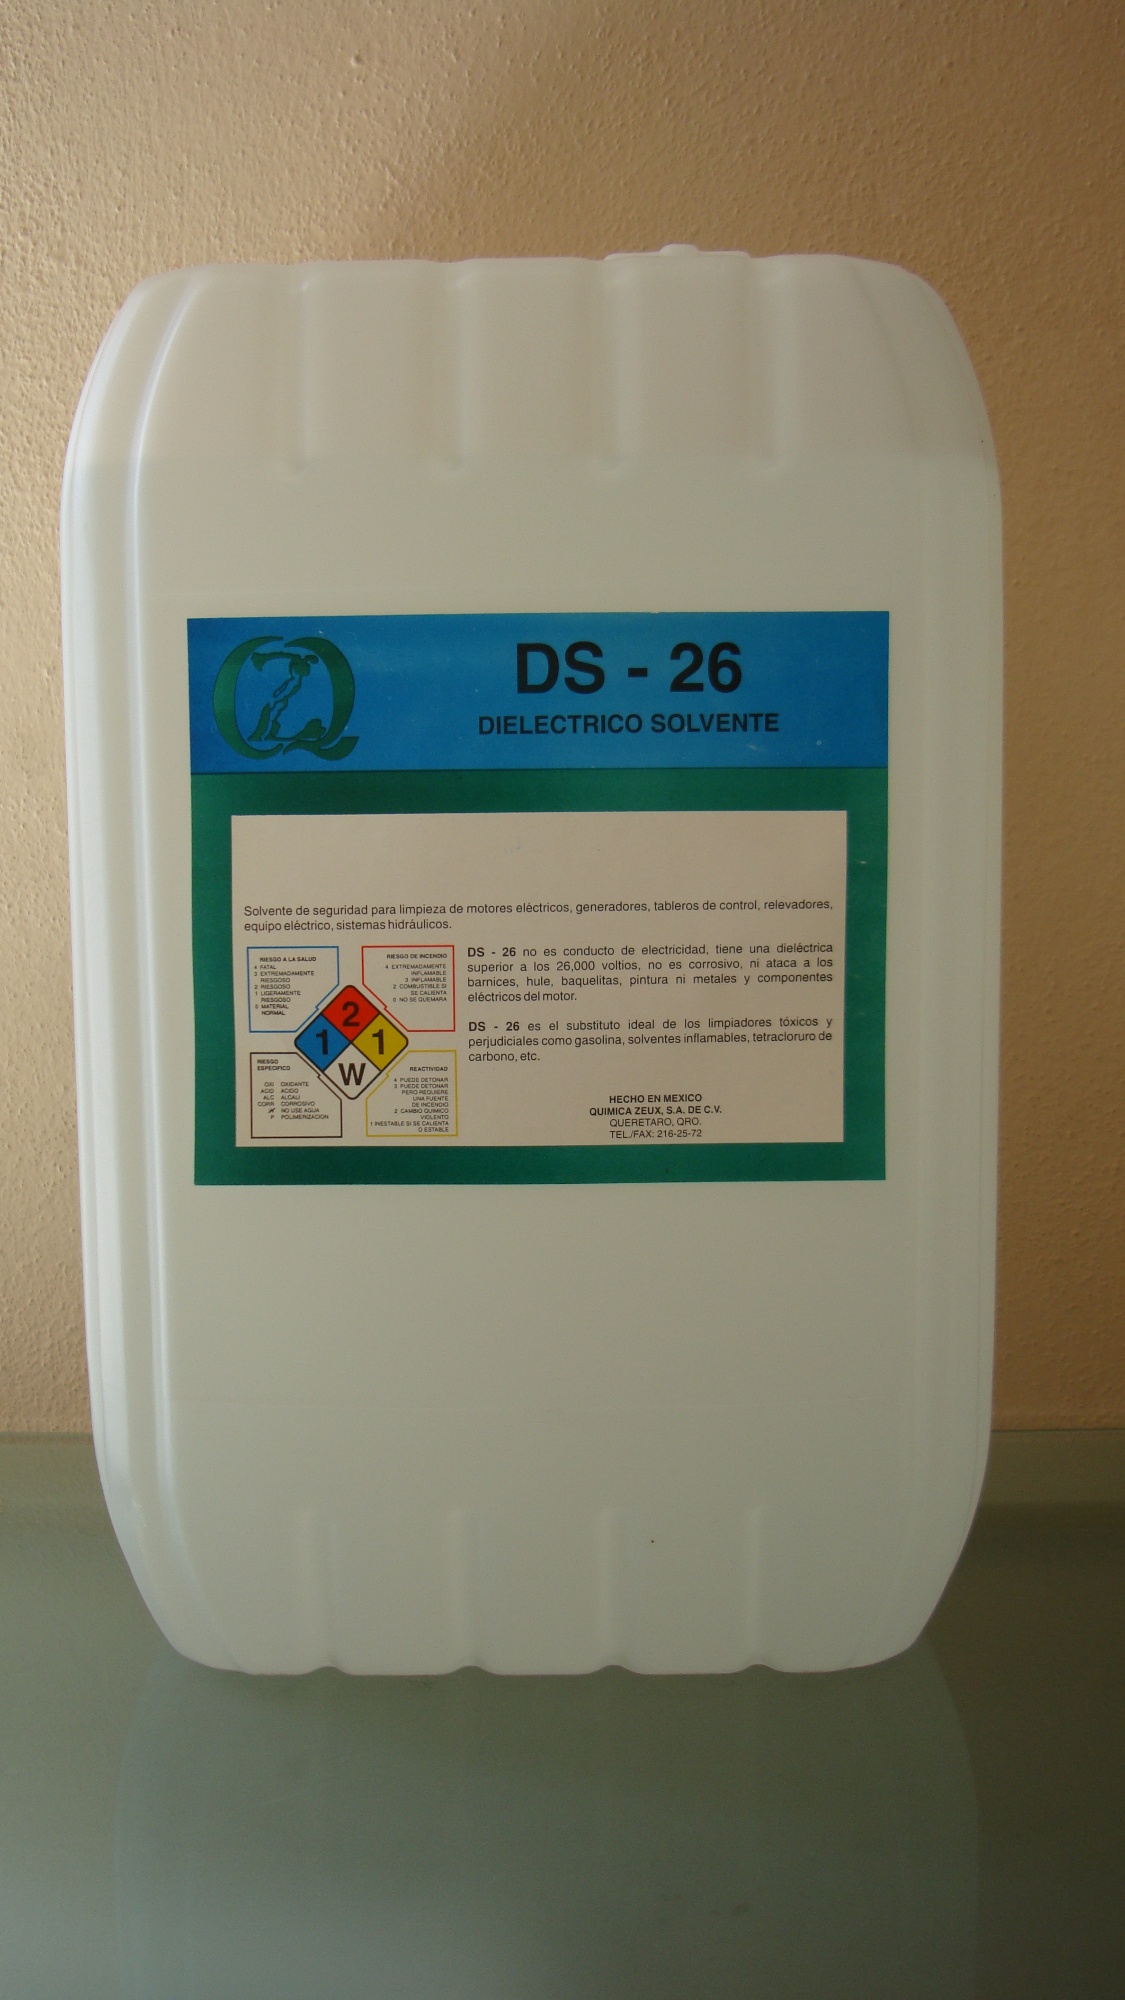 DS-26 (Dieléctrico solvente)